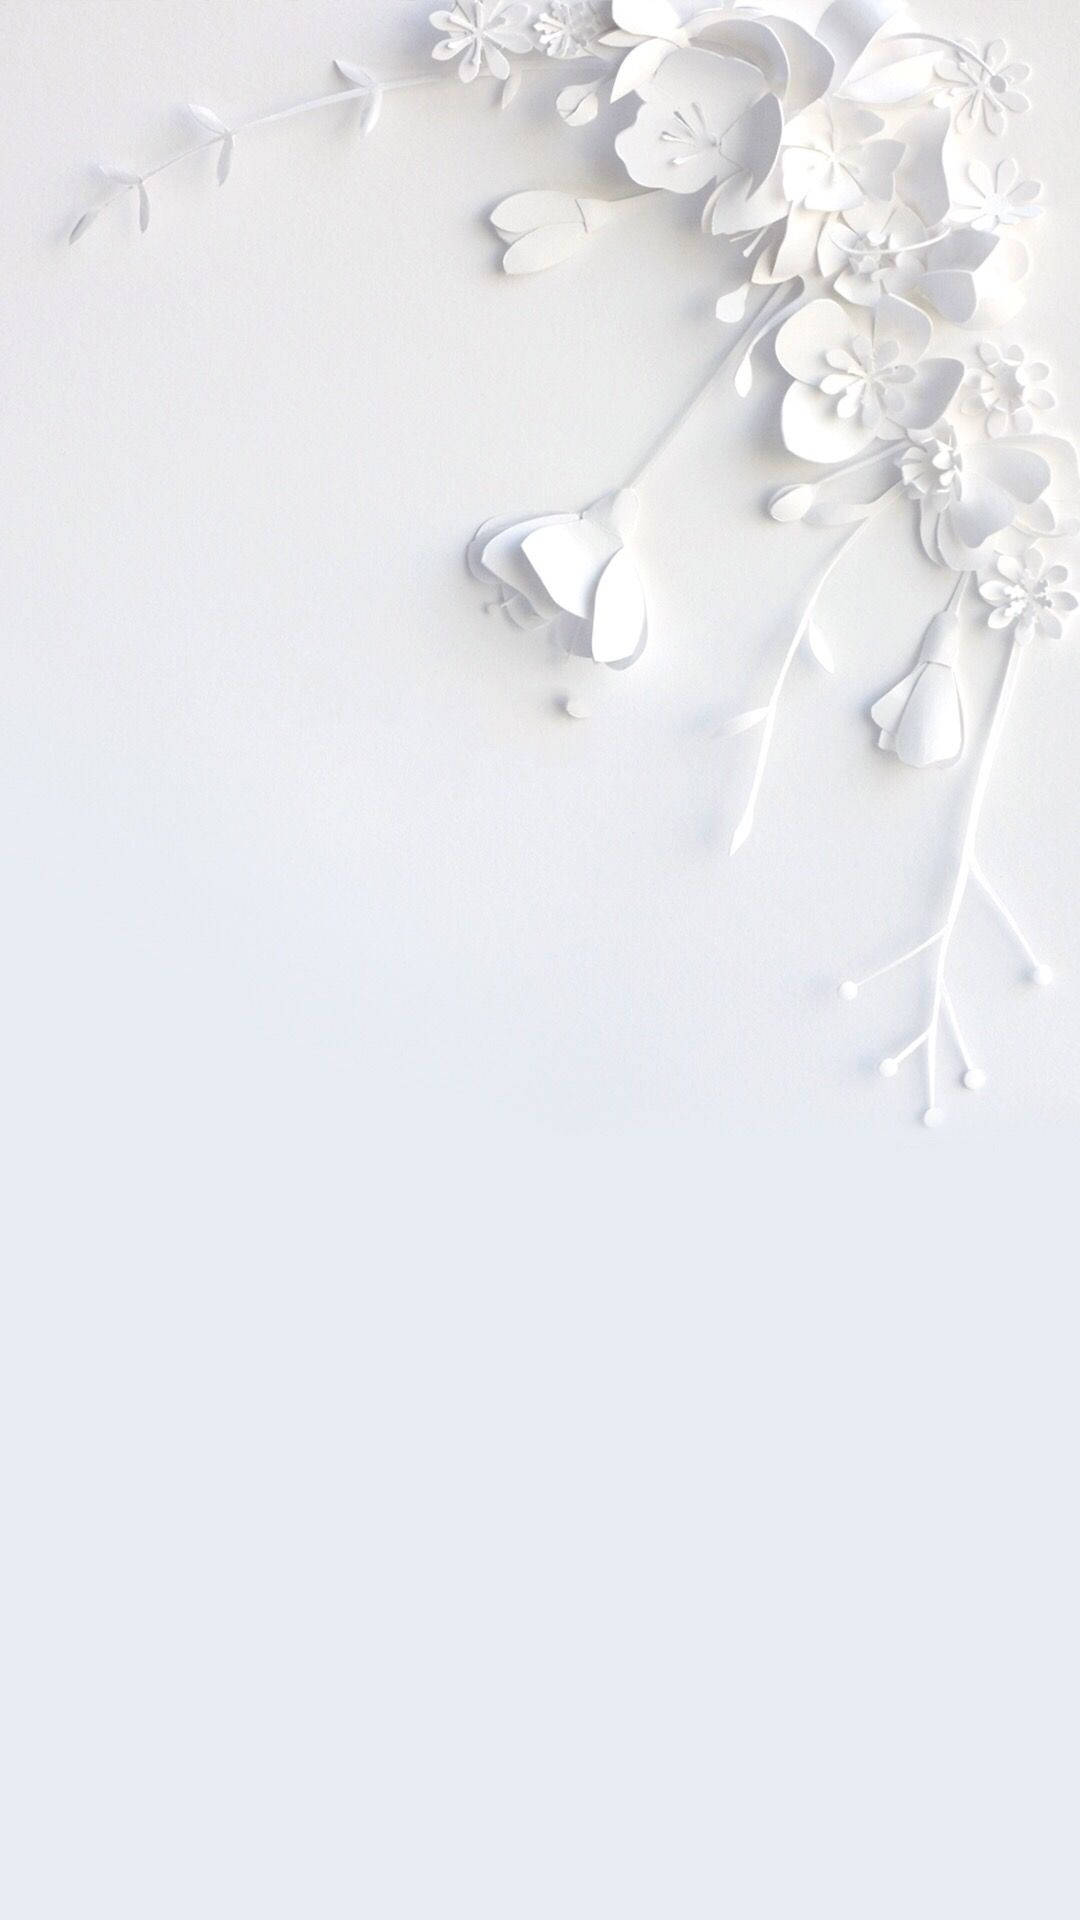 Hvid Monokrom Blomst Design Til iPhone Wallpaper